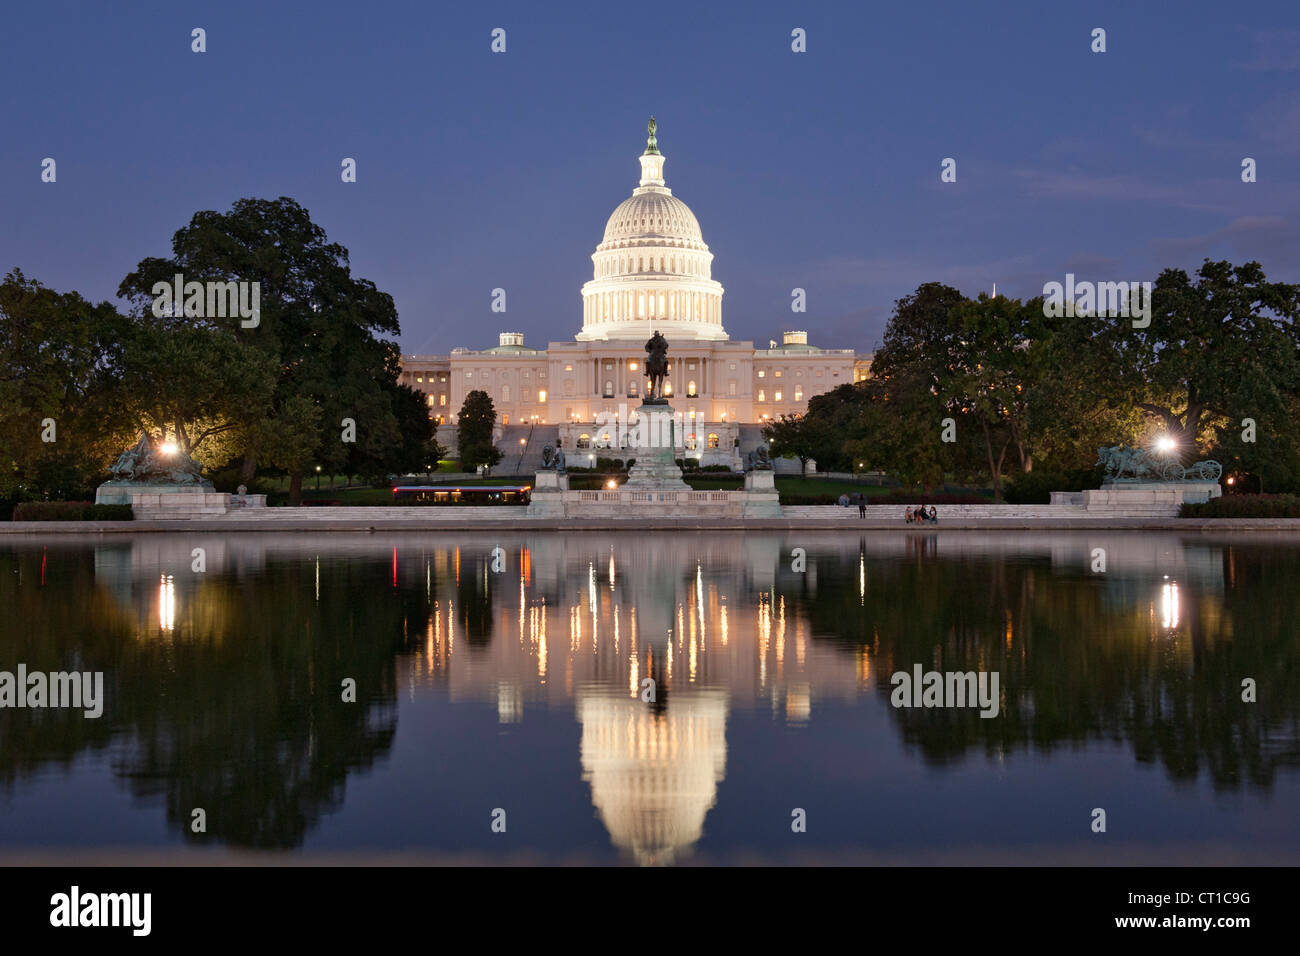 Kapitol spiegelt sich in den Wasserbecken in Washington DC, USA. Stockfoto